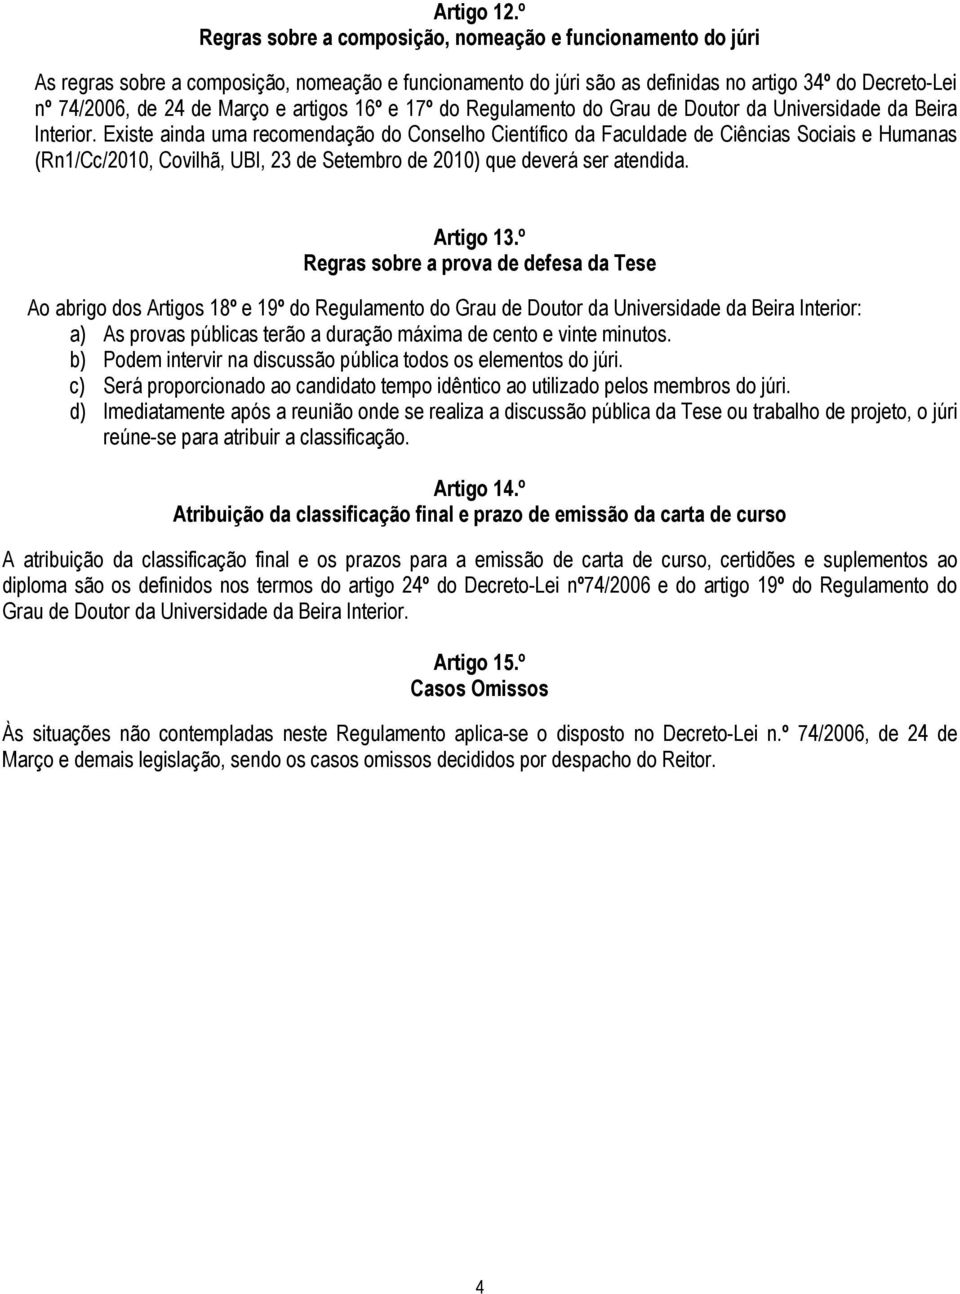 artigos 16º e 17º do Regulamento do Grau de Doutor da Universidade da Beira Interior.